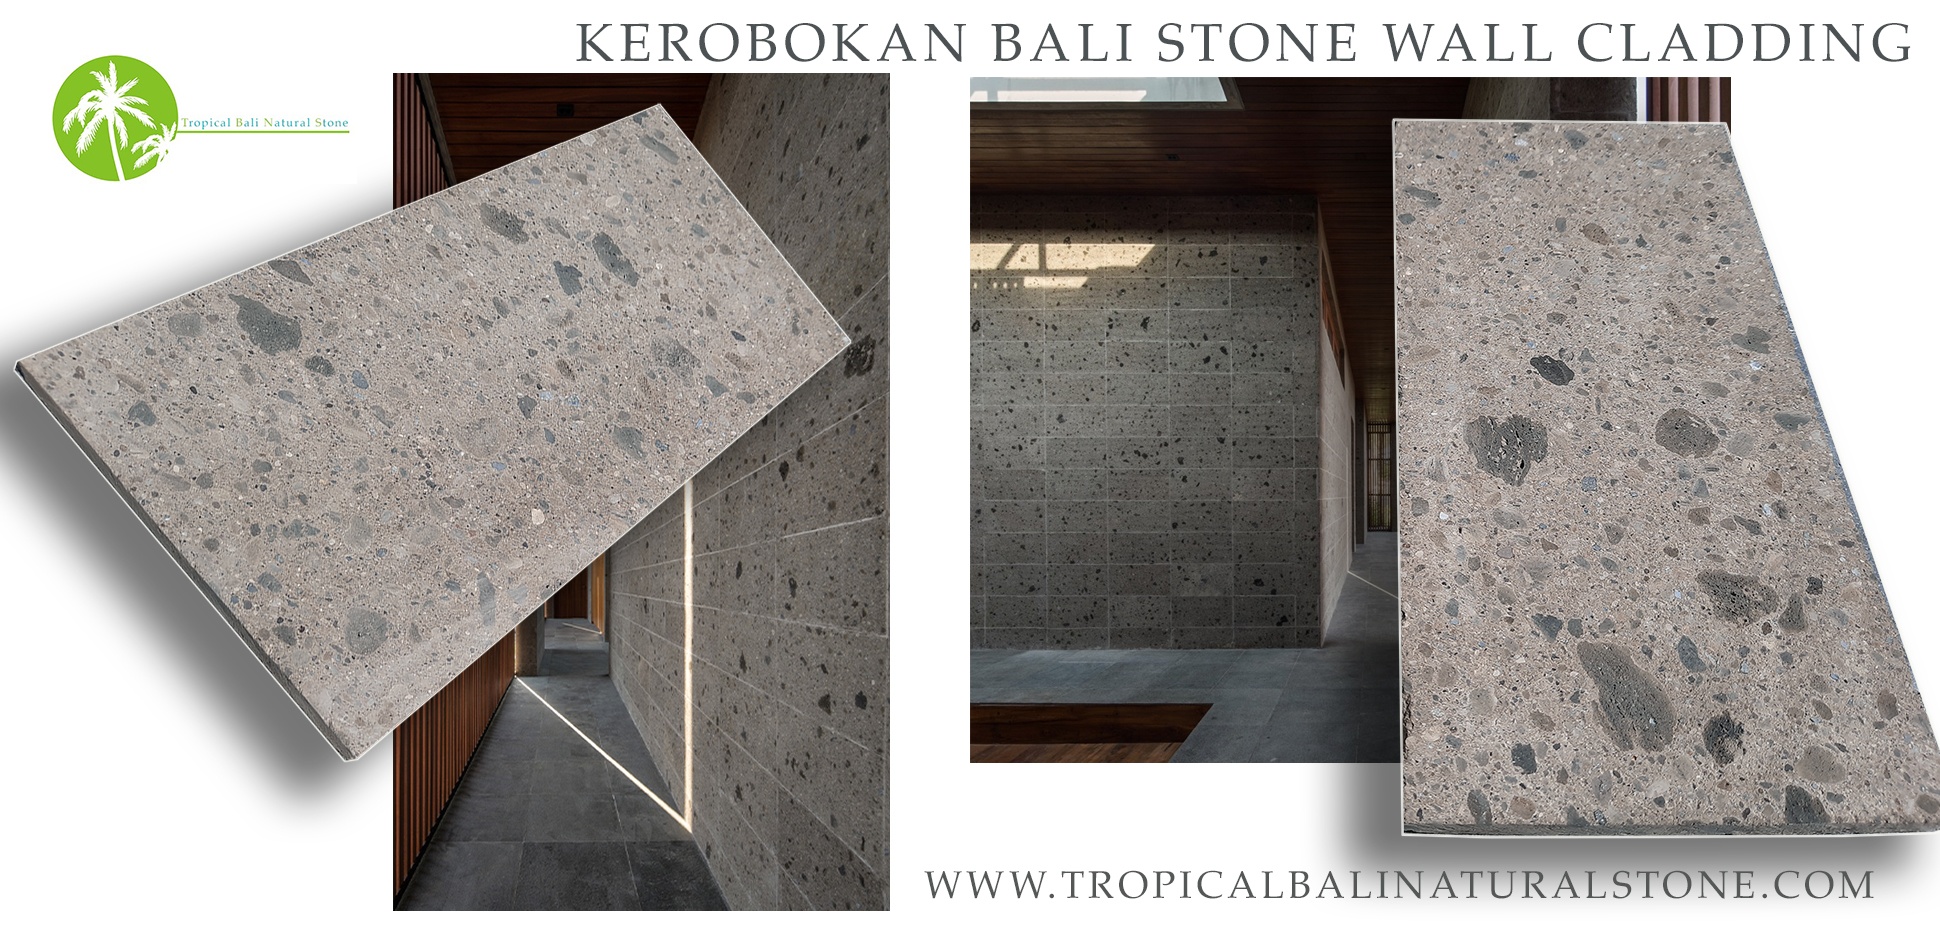 "Harmonious integration of Bali Kerobokan stone in indoor living space."